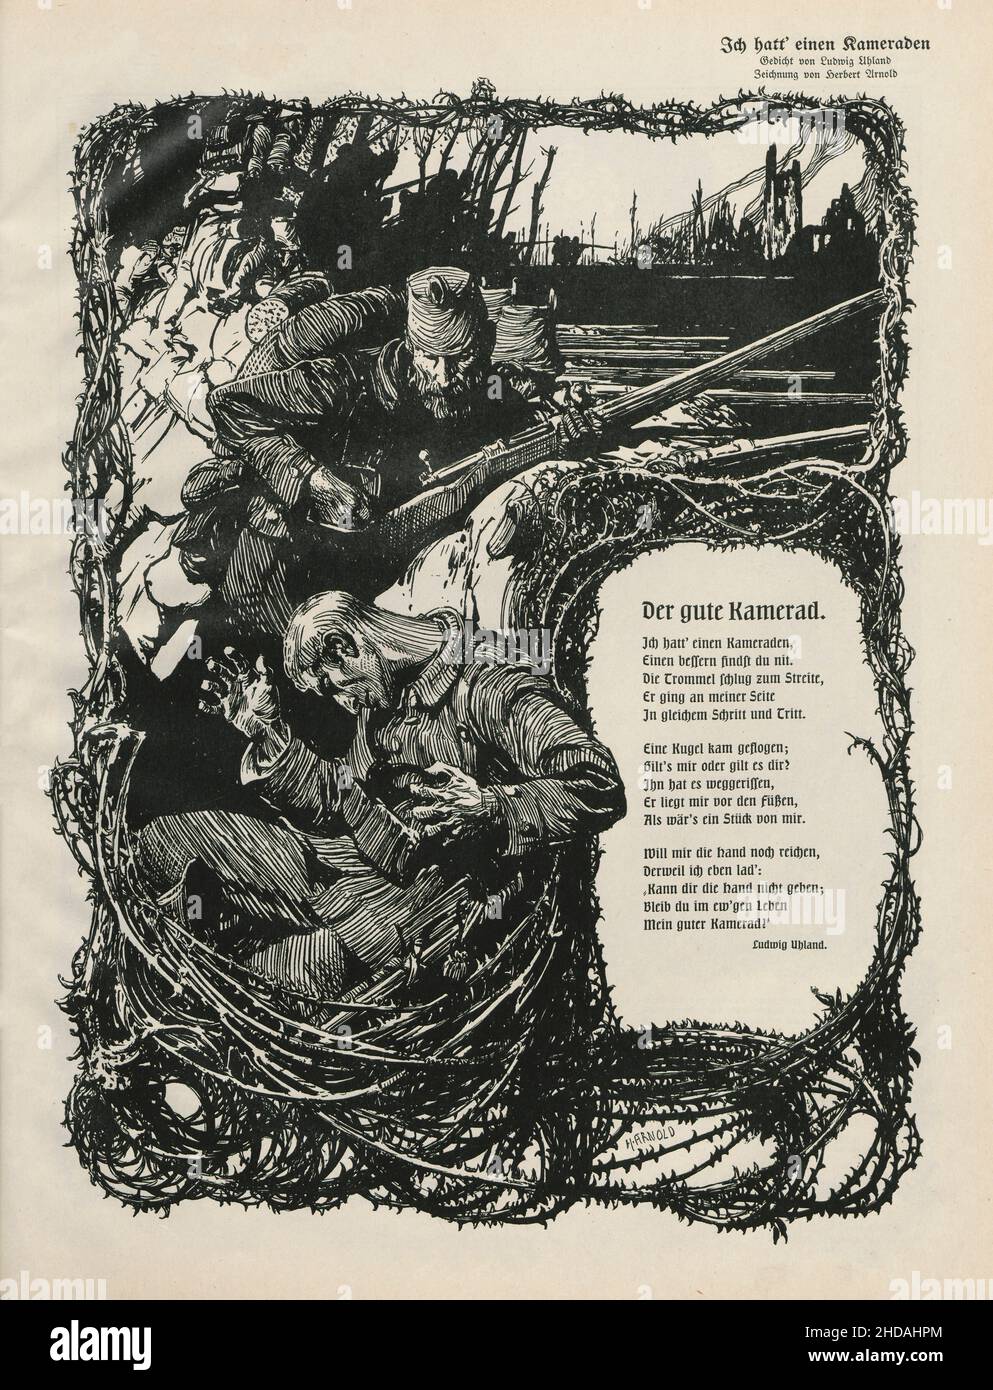 Período de la Primera Guerra Mundial. Ilustración de propaganda patriótica alemana de época con el verso de Ludwig Uhland (1787–1862) 'Der Gute Kamerad' (buen camarada). Alemán Foto de stock